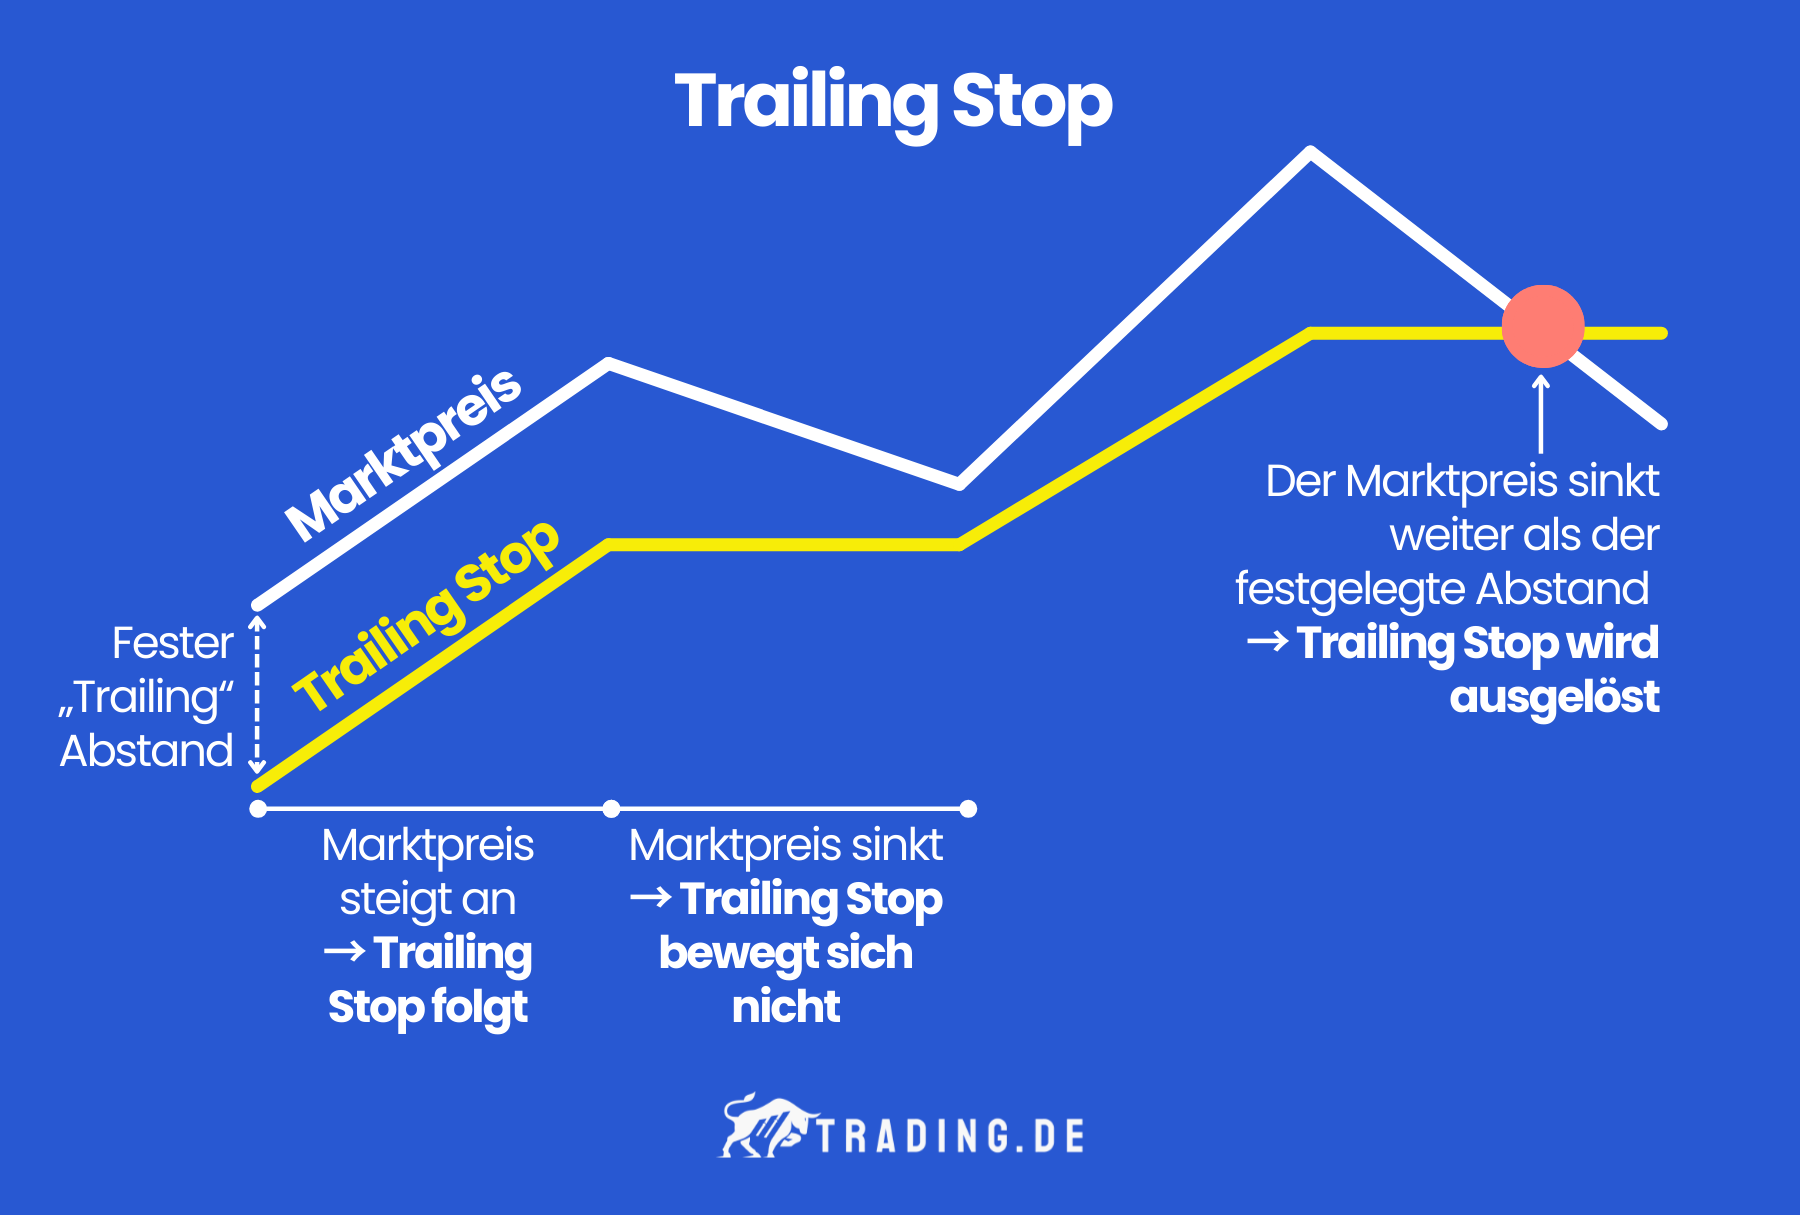 Funktionsweise des Trailing Stops - Der Marktpreis bewegt sich, der Trailing Stop passt sich an.